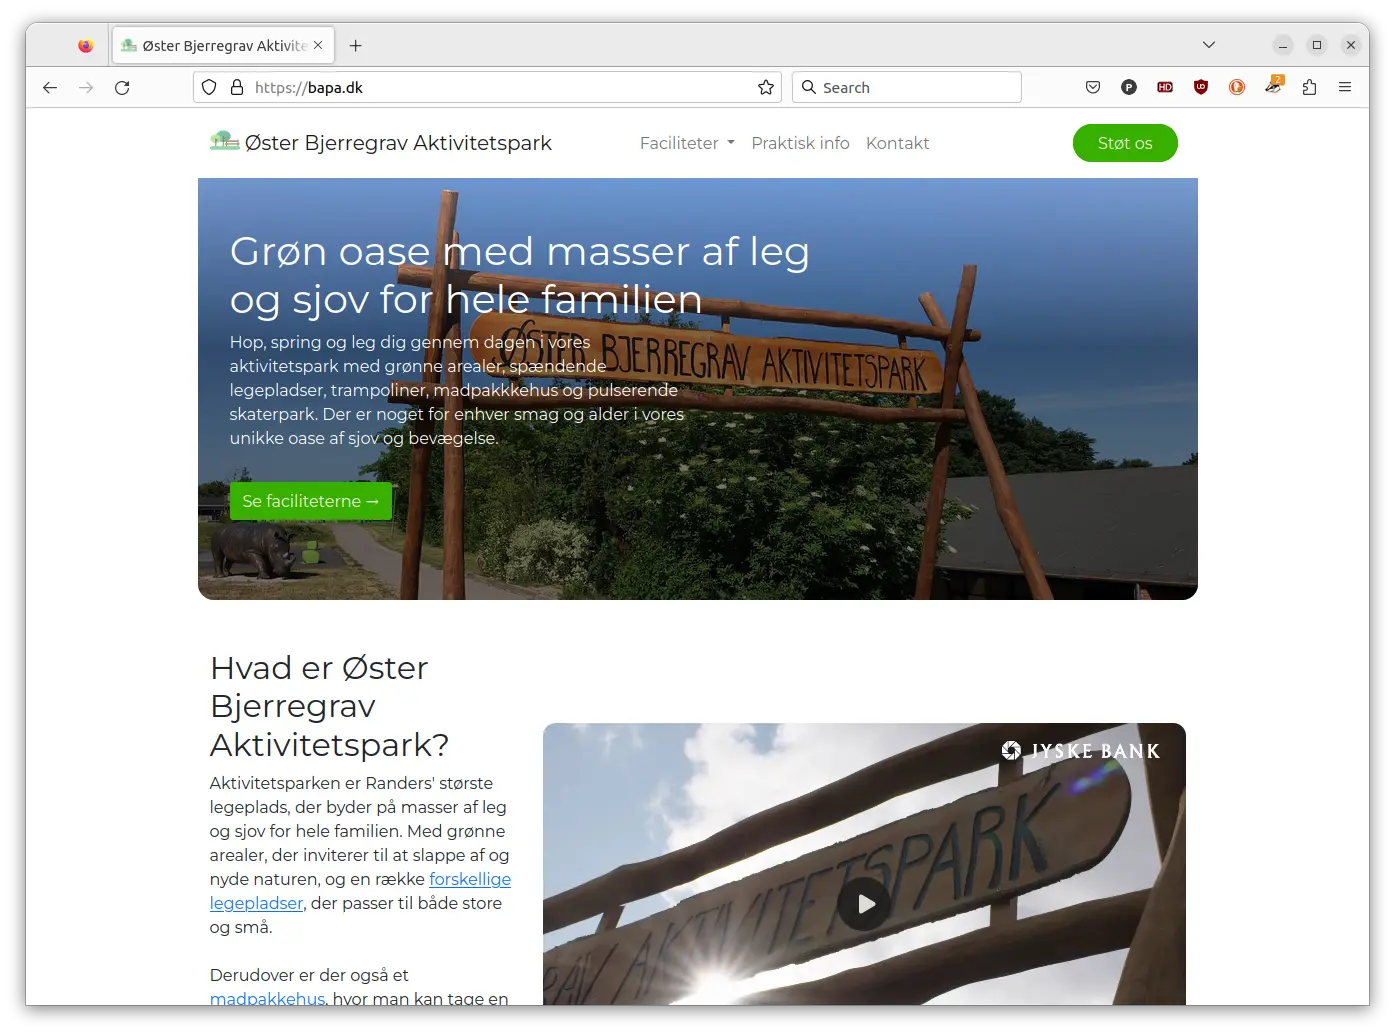 Hjemmeside til Øster Bjerregravs Aktivitetspark